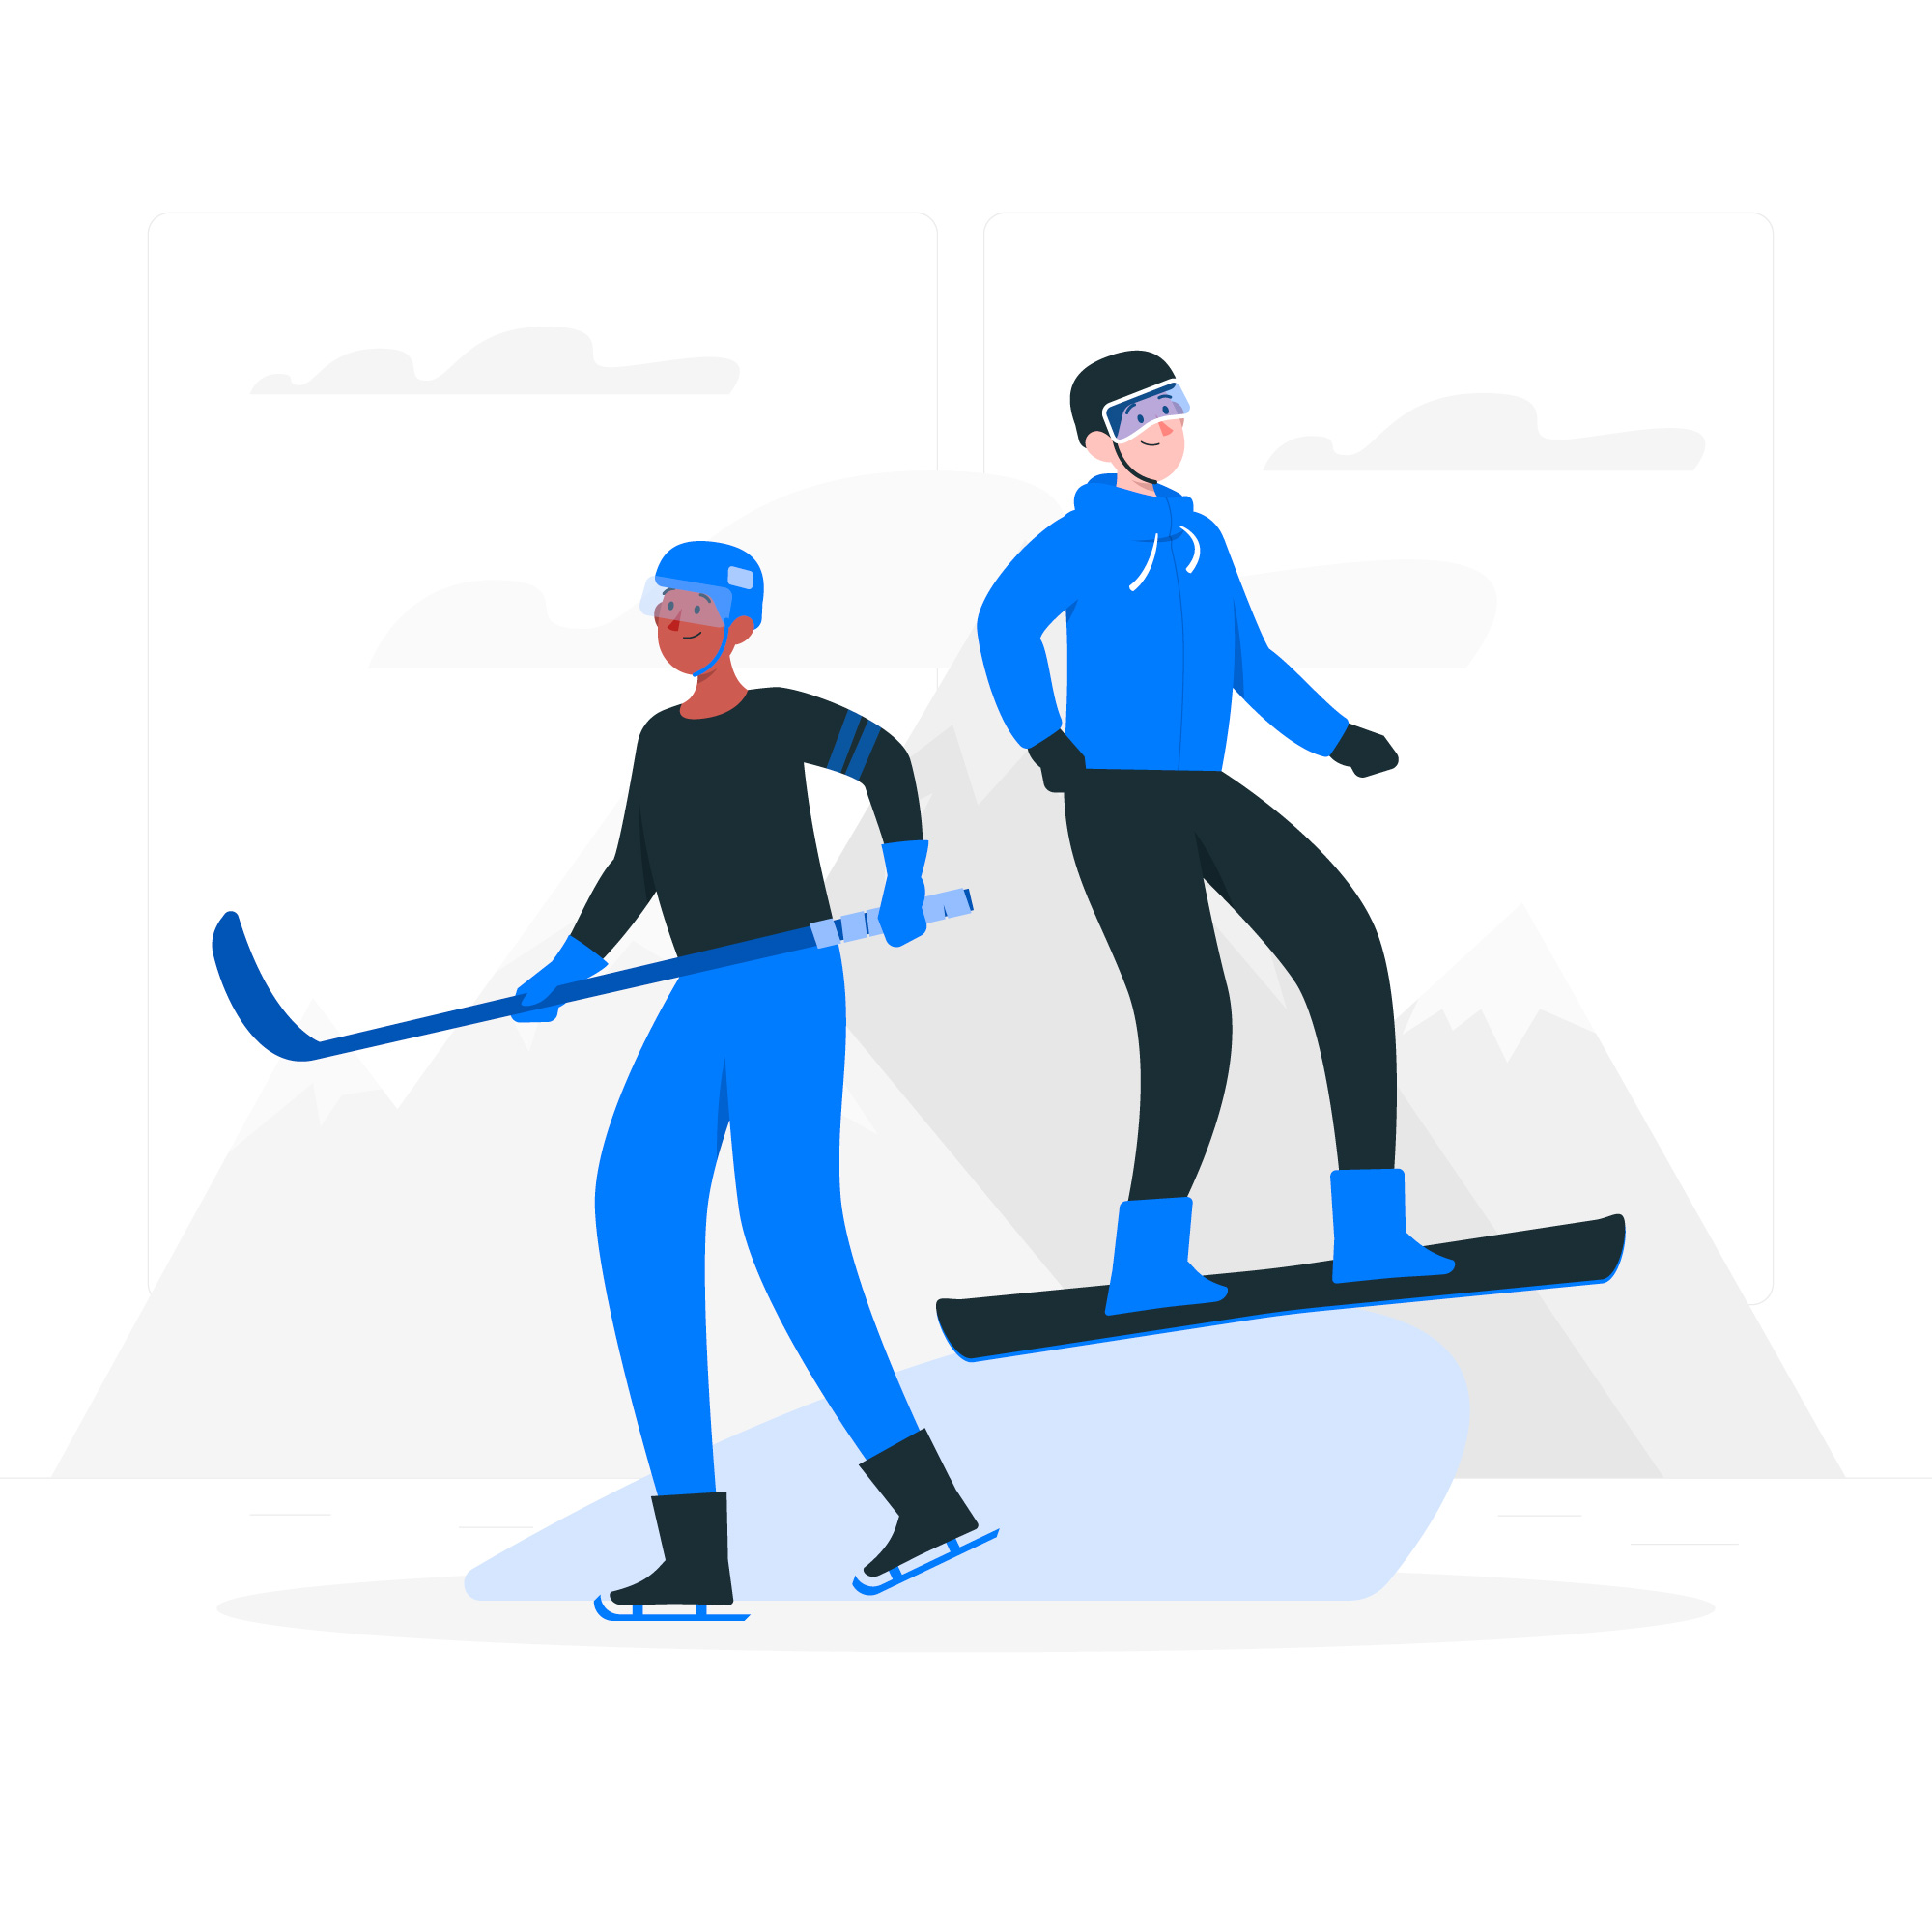 冬奥会冰球和滑雪项目扁平化插画0